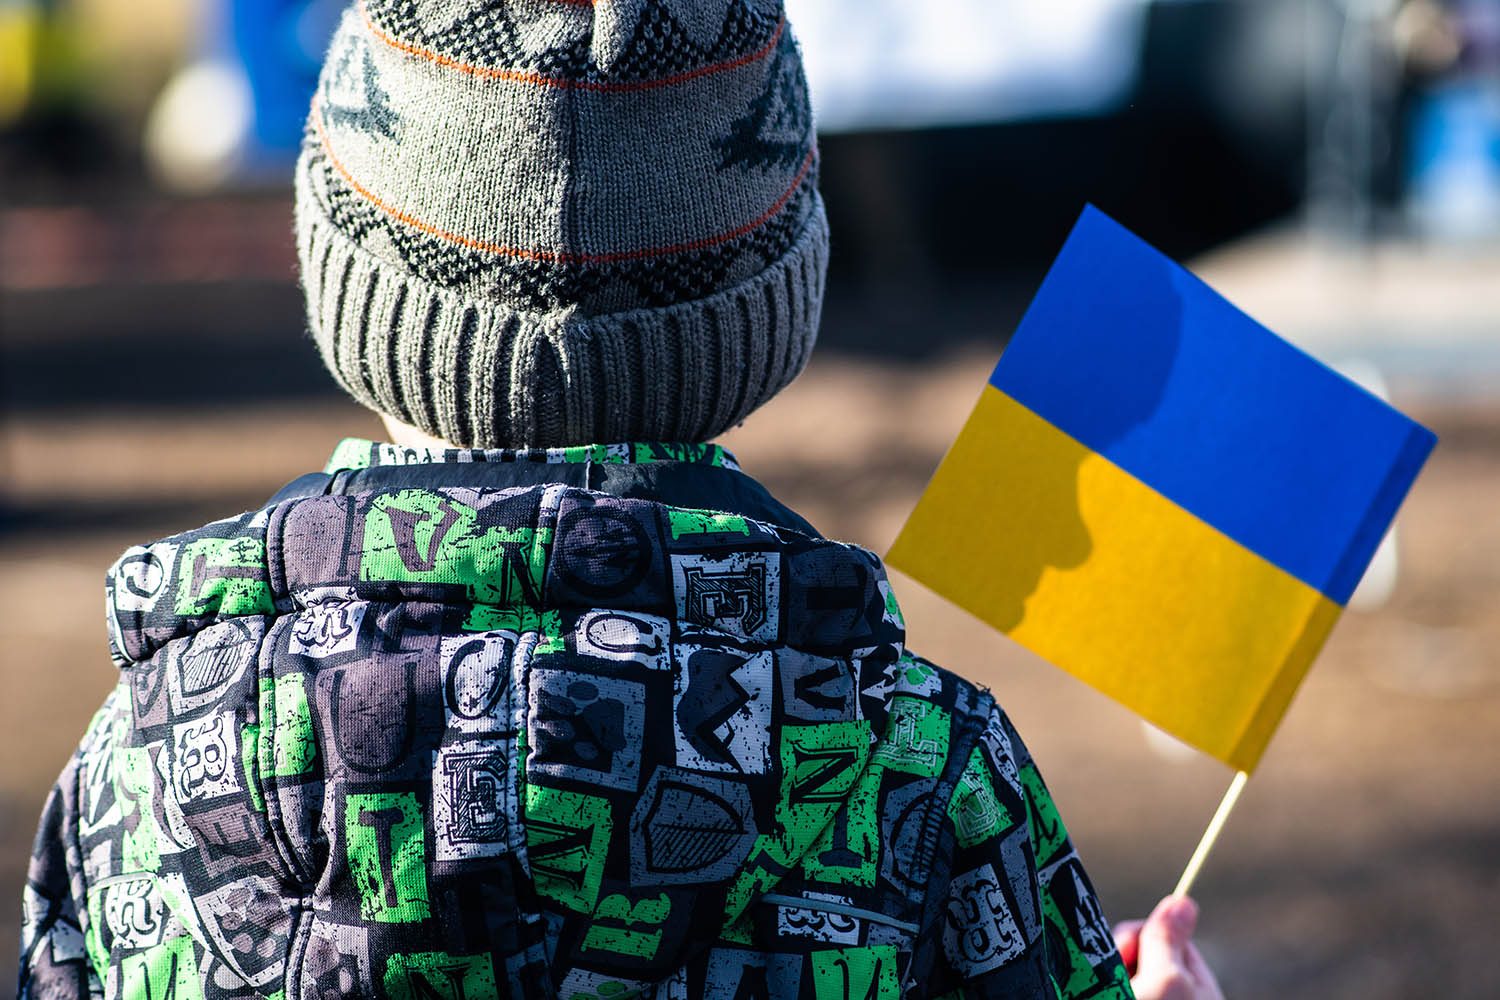 Viele Menschen, die aus der Ukraine geflohen sind, sind gesundheitlich angeschlagen – nicht nur körperlich, sondern auch seelisch. „Der Hausarzt“ gibt Tipps, worauf bei der medizinischen Versorgung zu achten ist.